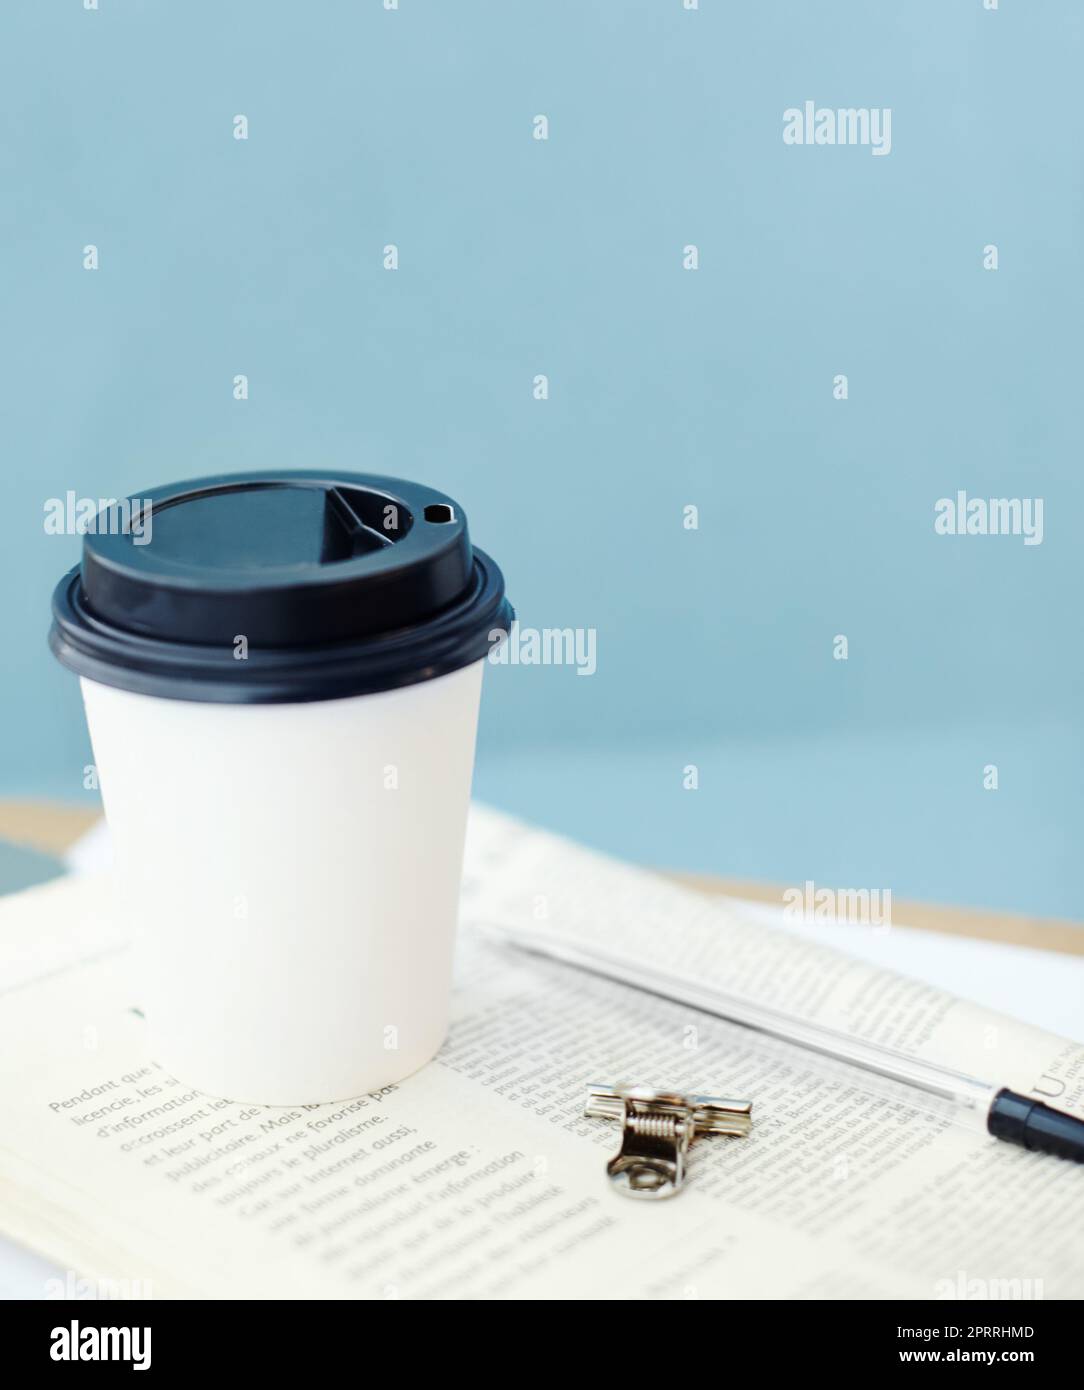 Tenersi aggiornati su una pausa caffè. Tazza da caffè usa e getta sopra un giornale, con una penna e una clip per rilegare. Foto Stock